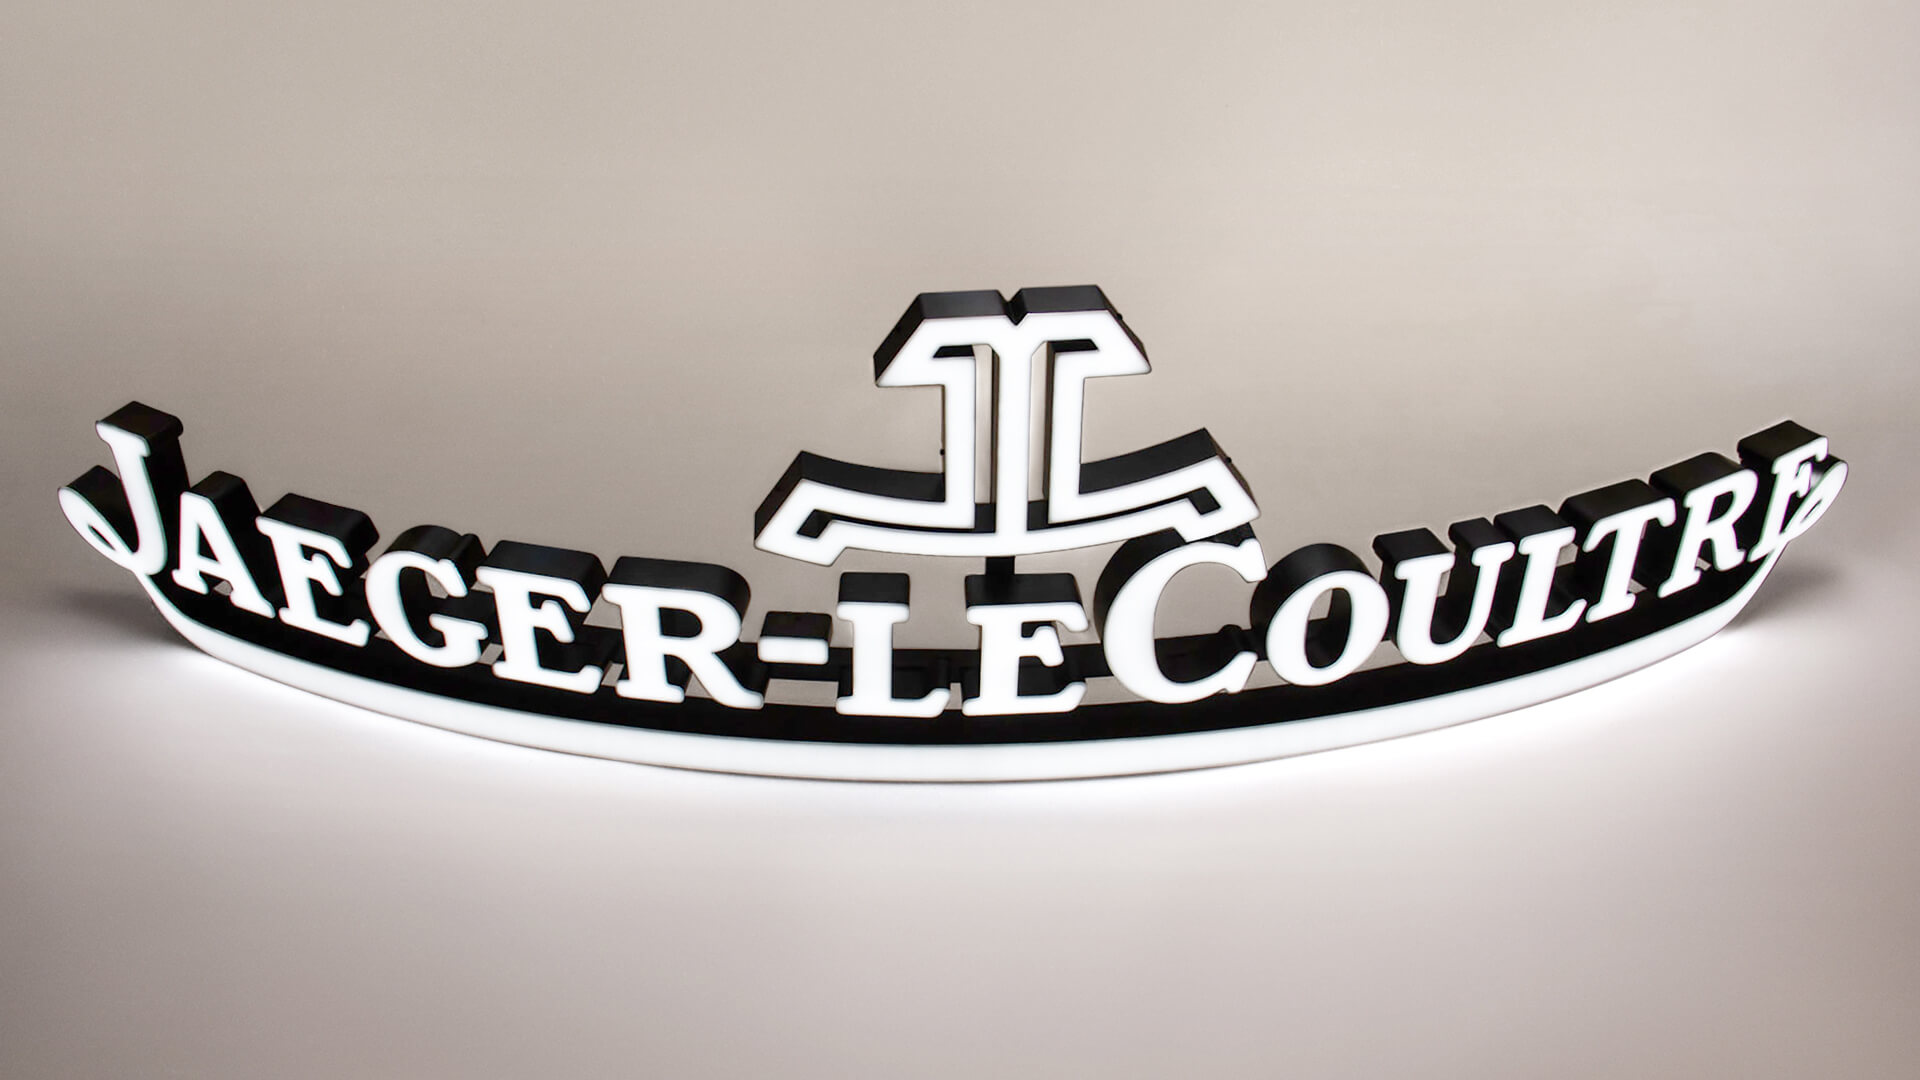 Jaeger-LeCoultre - logo frontal iluminado en blanco